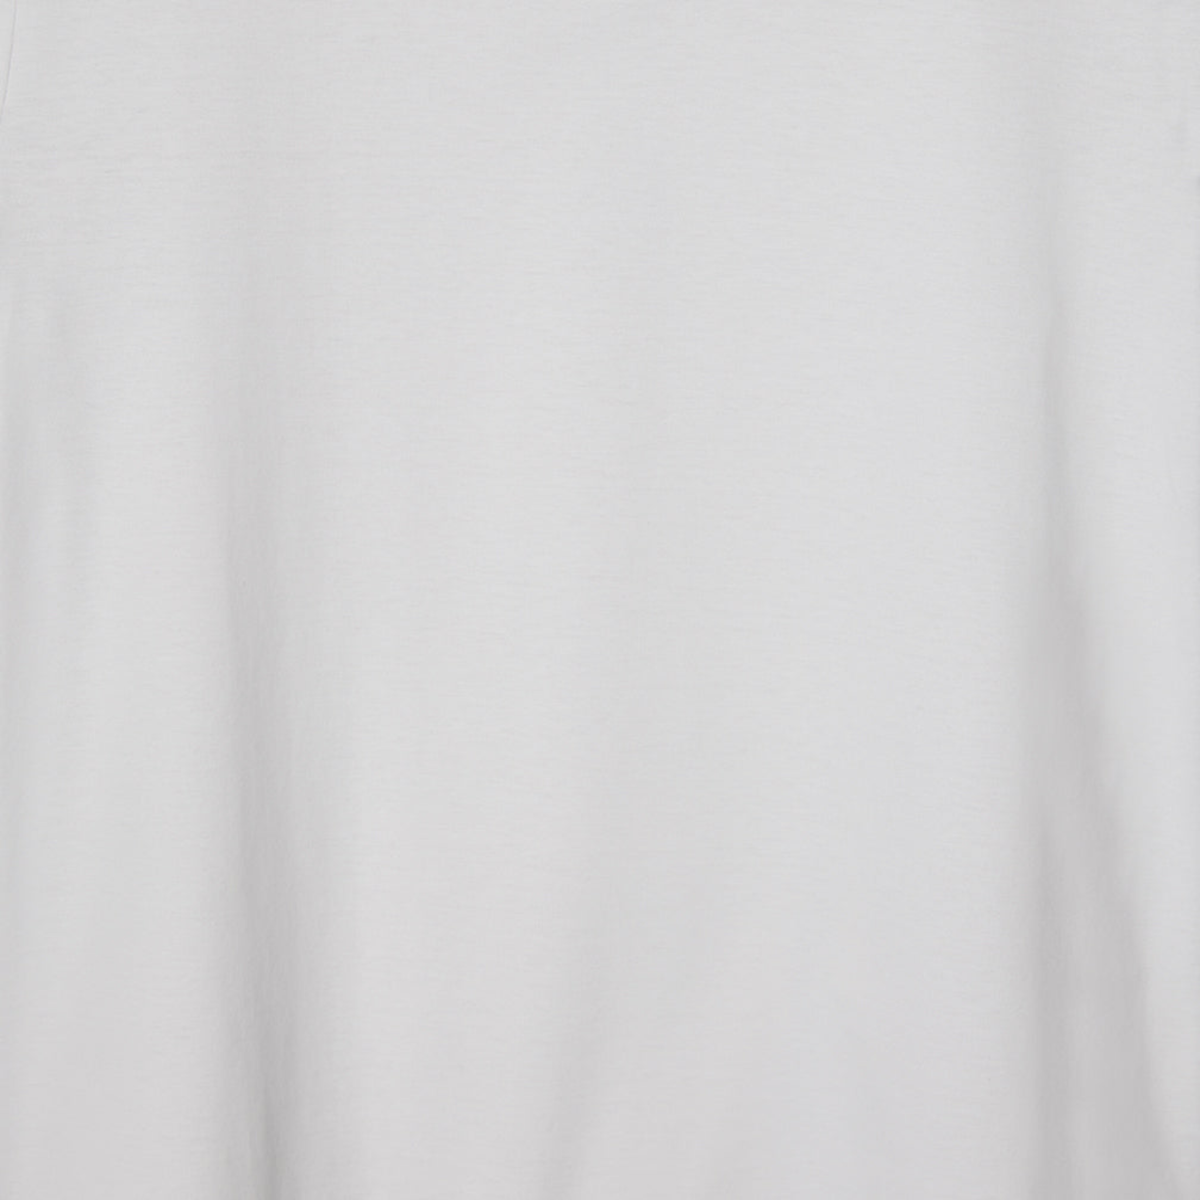 Fabric Closeup of Tin Sferra Caricia Pant